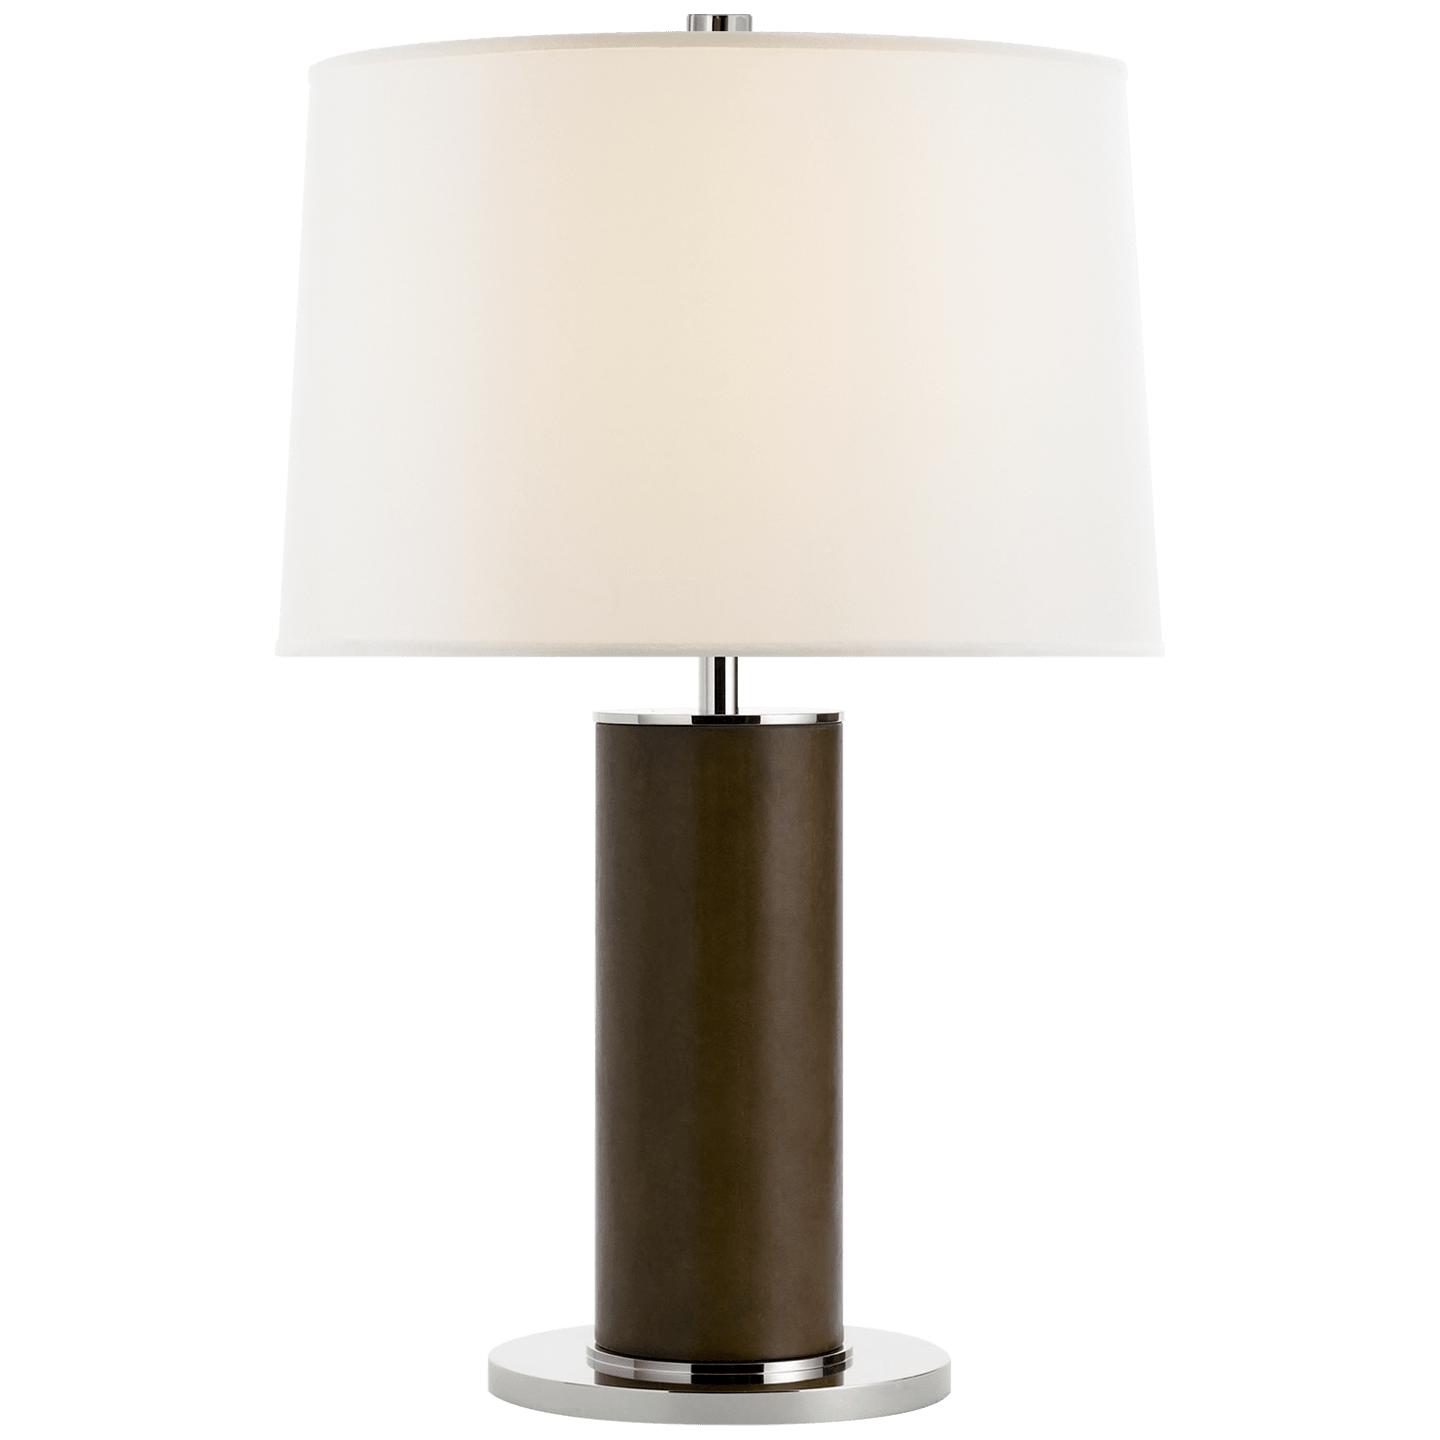 Купить Настольная лампа Beckford Table Lamp в интернет-магазине roooms.ru